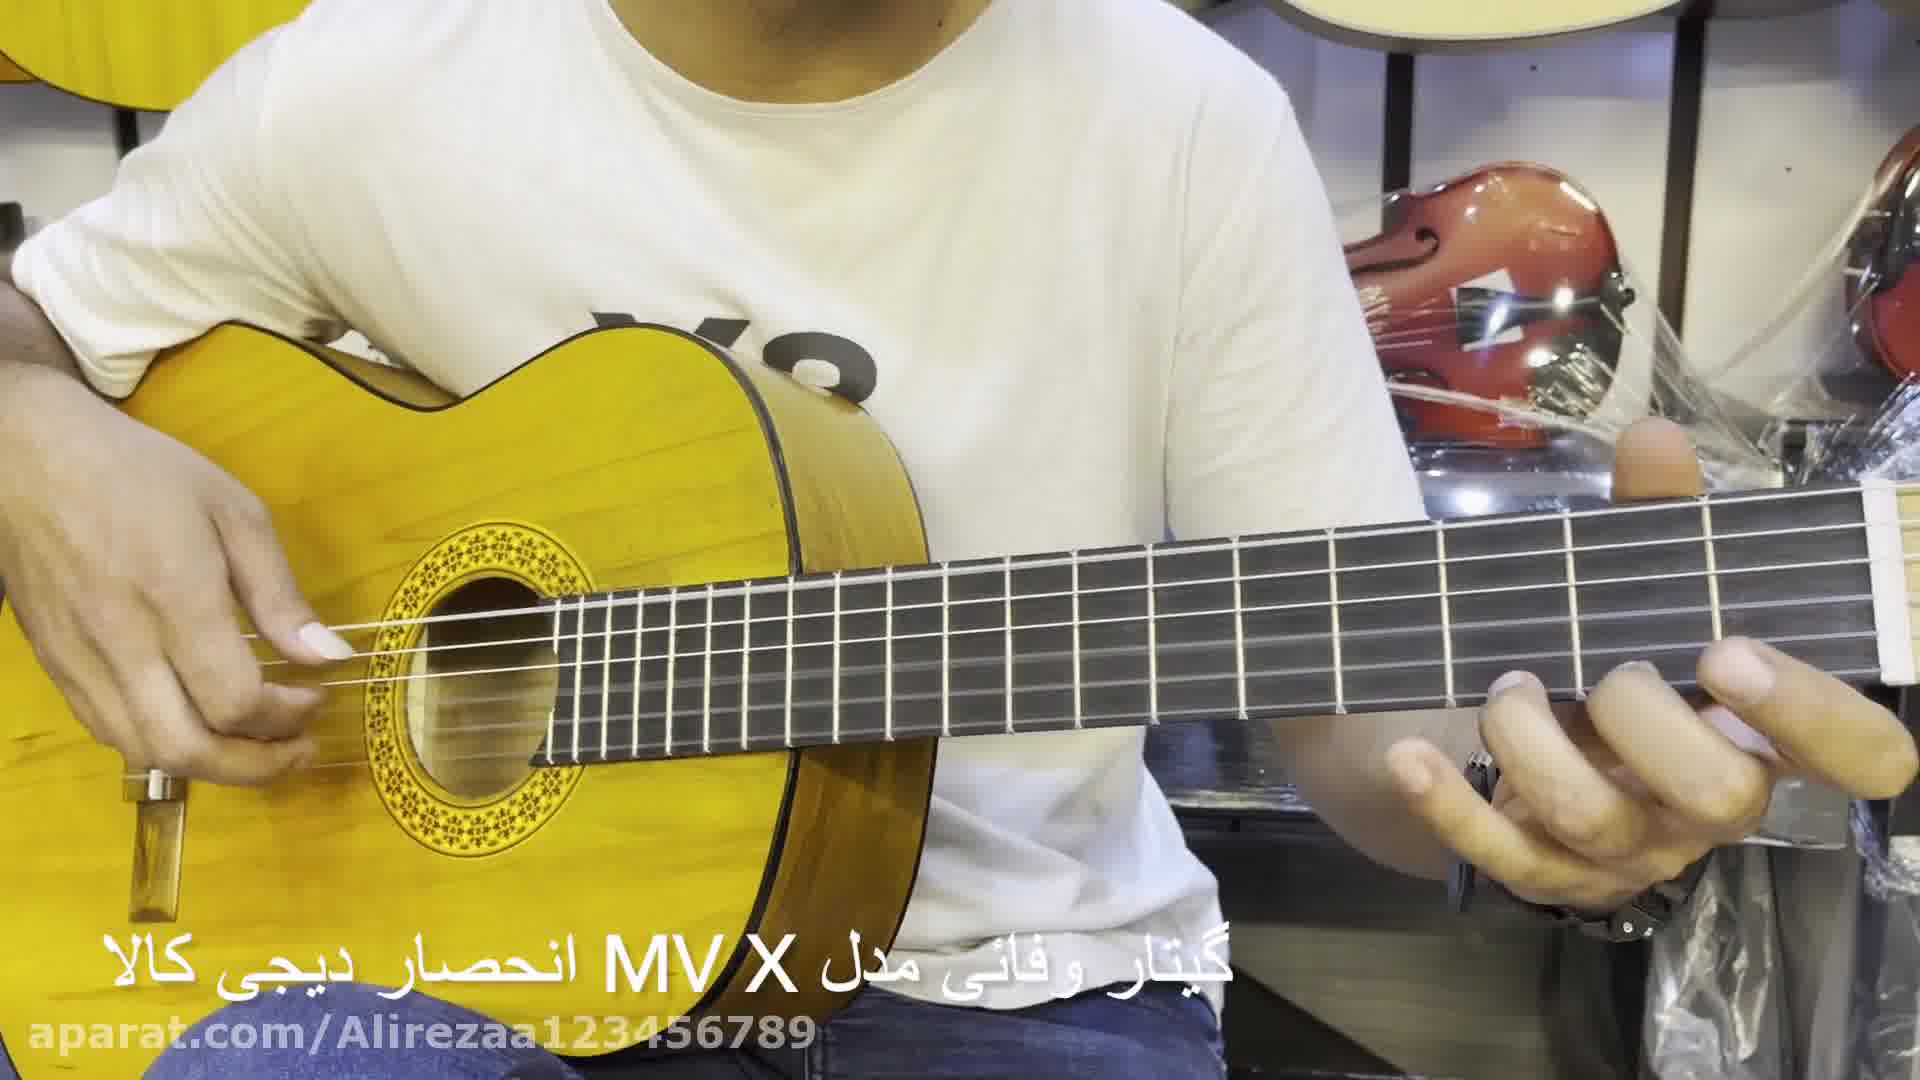 تست صدای گیتار کلاسیک وفایی مدل mv x